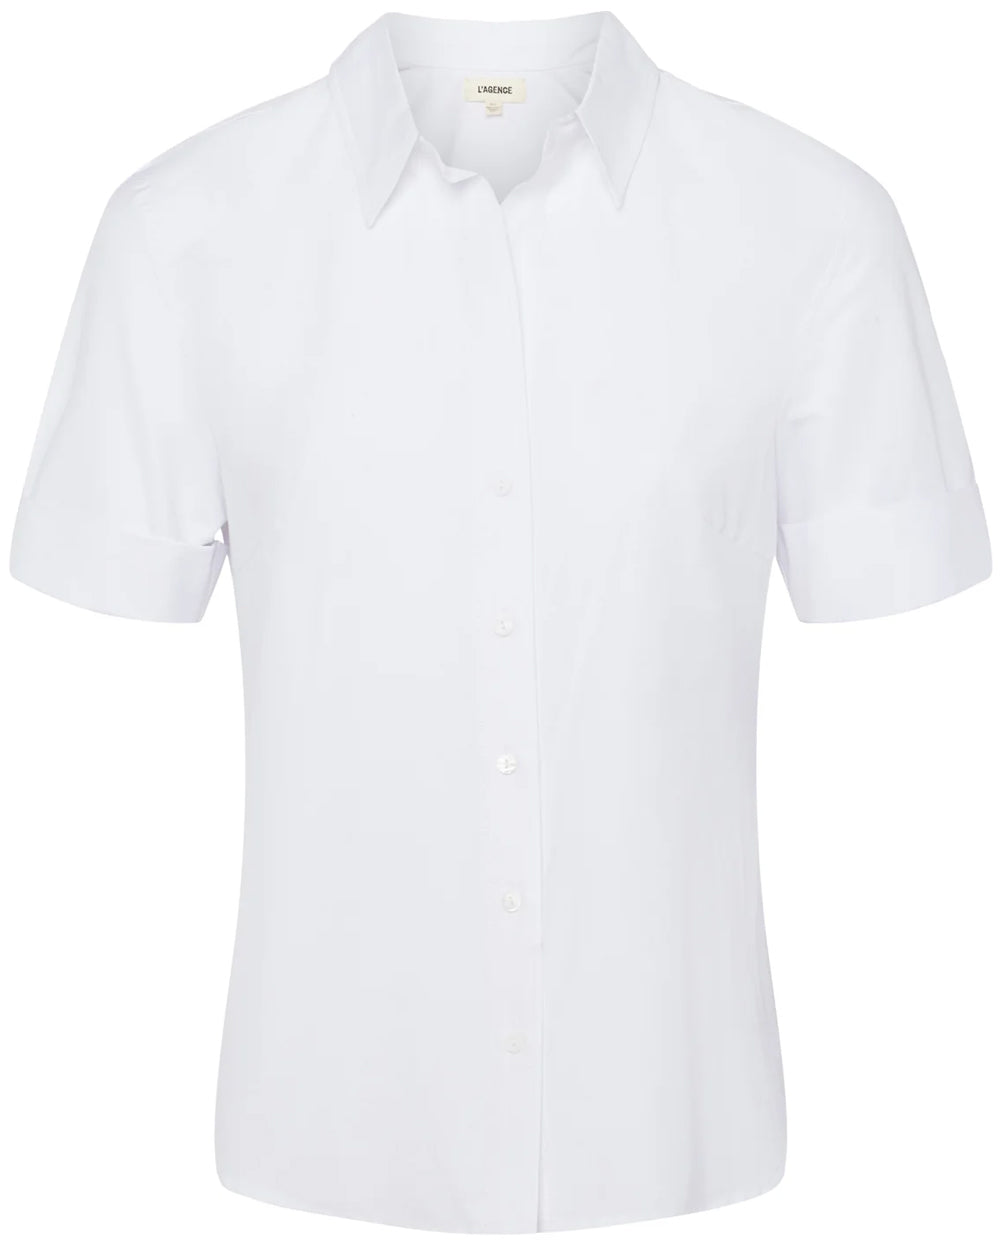 White Risette Roll Sleeve Shirt